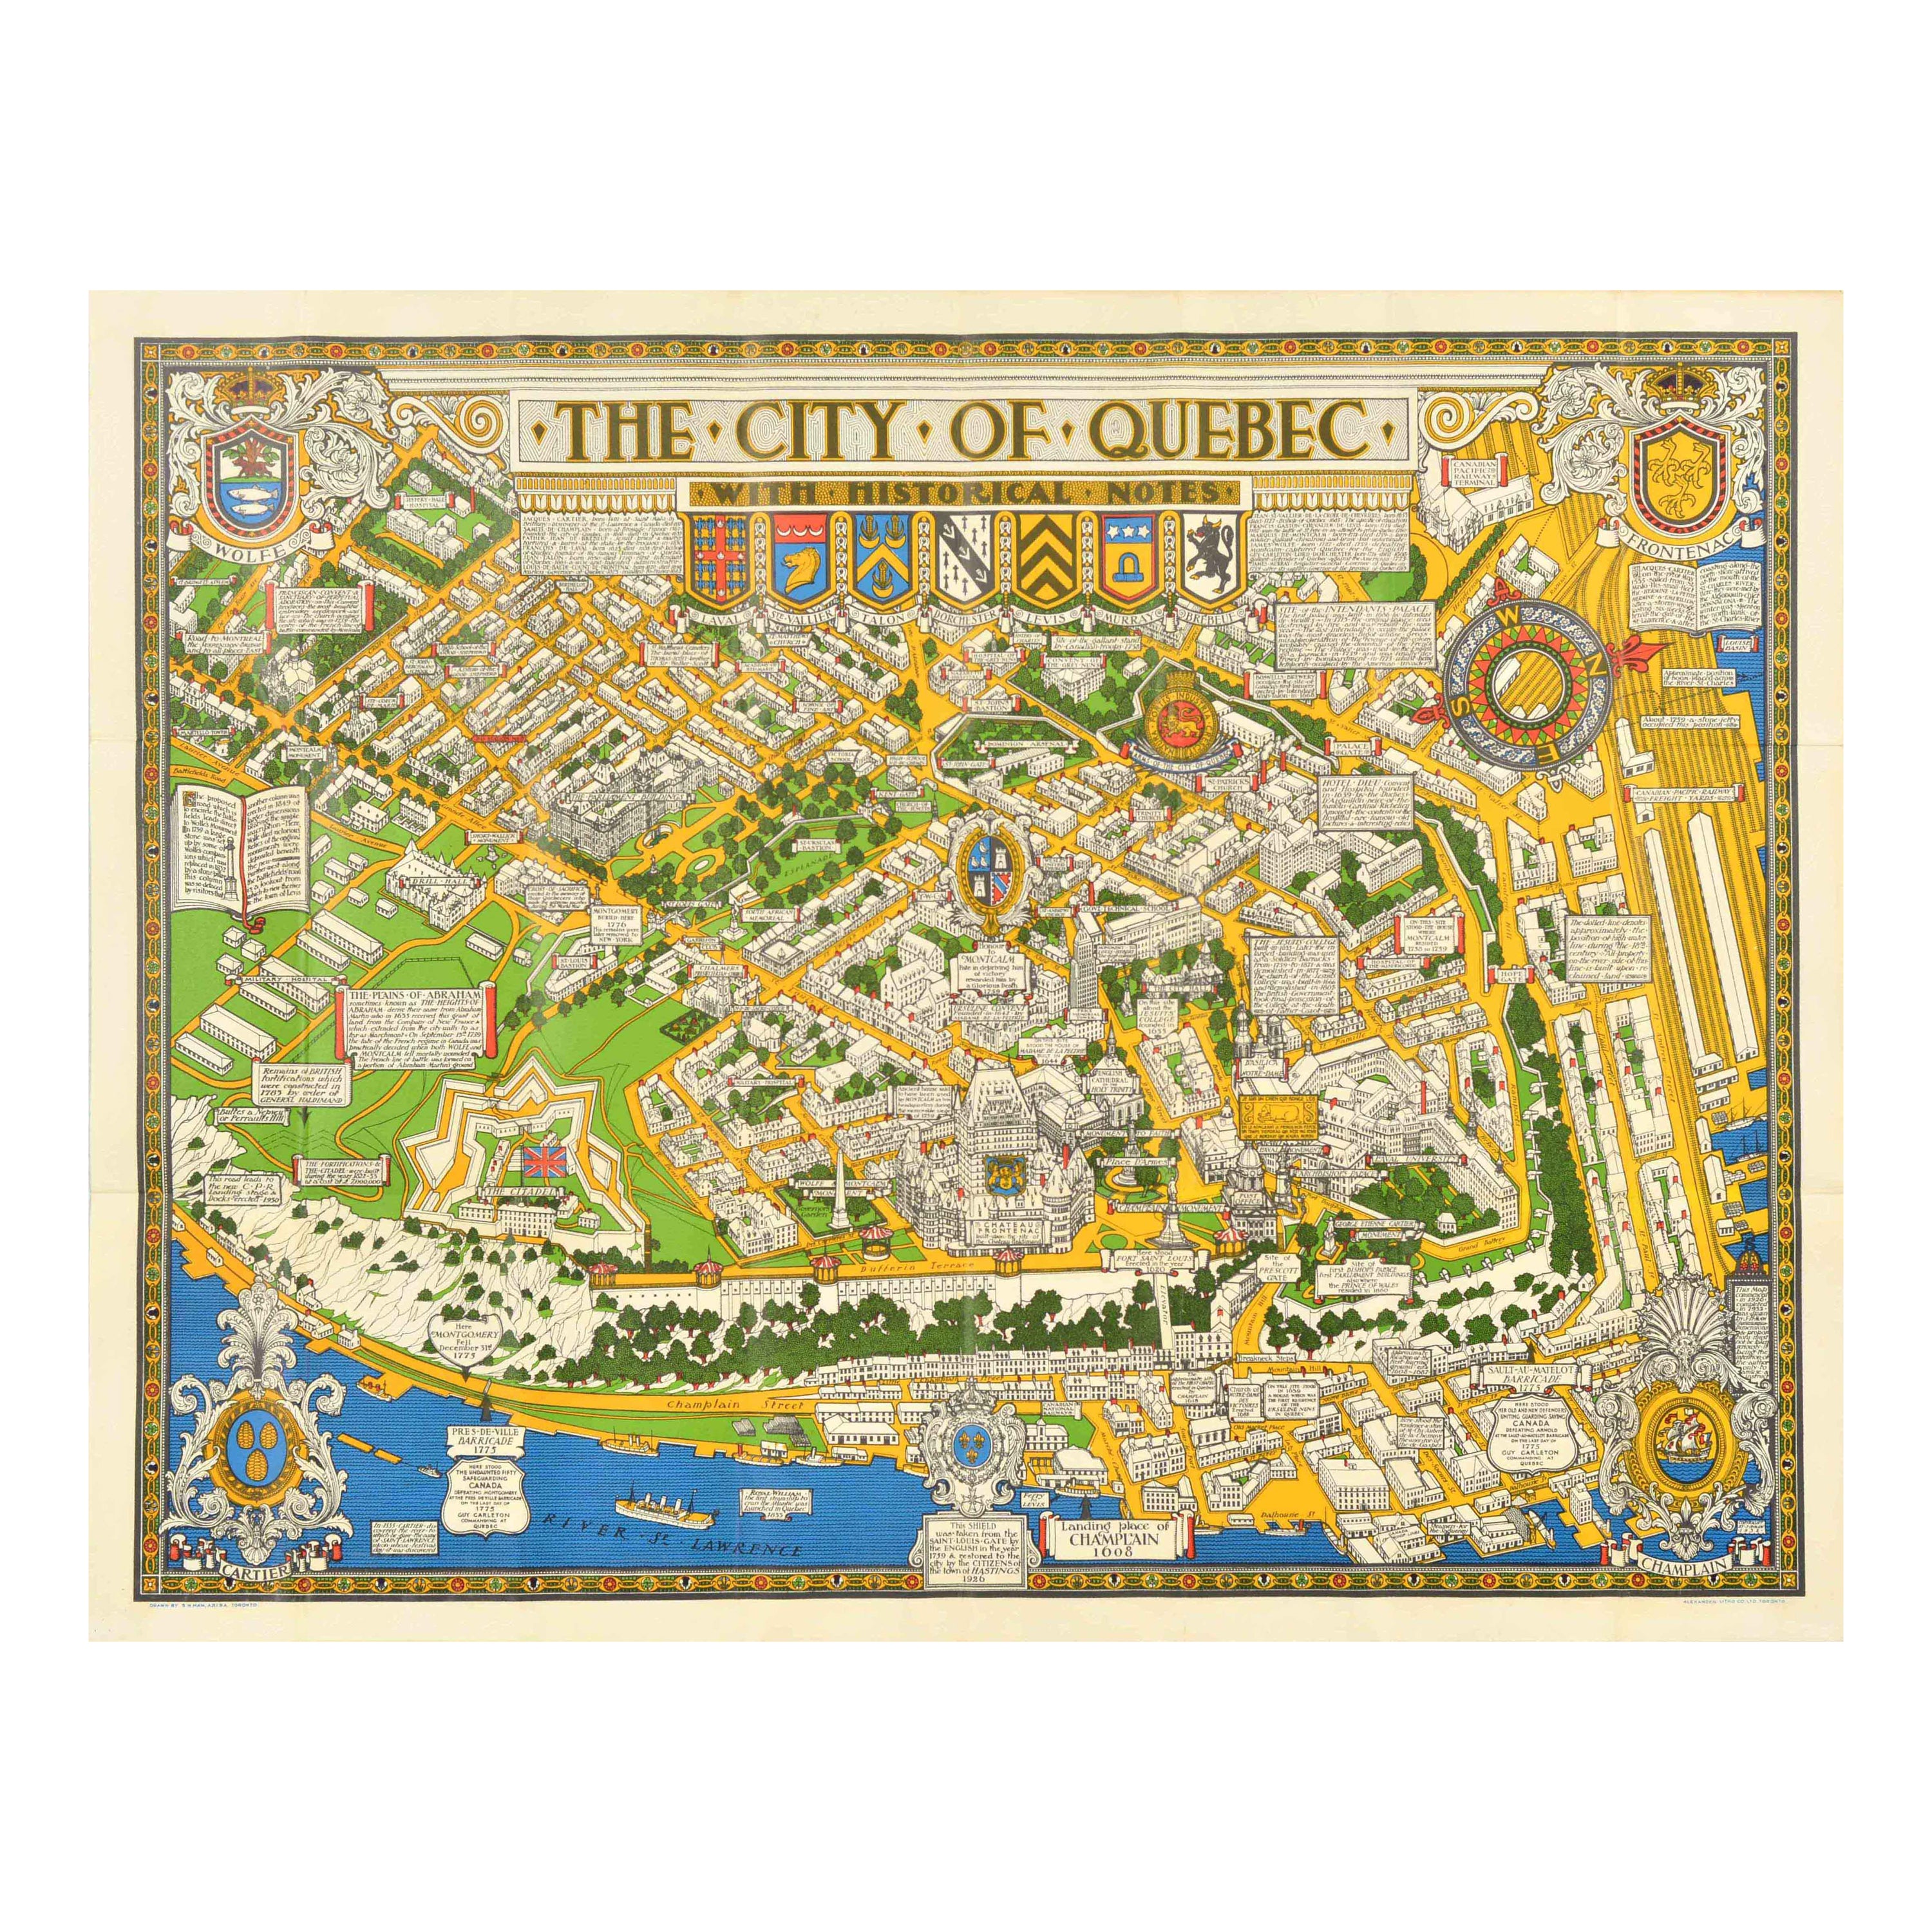 Affiche rétro originale de voyage, carte du Québec avec notes historiques, Canada